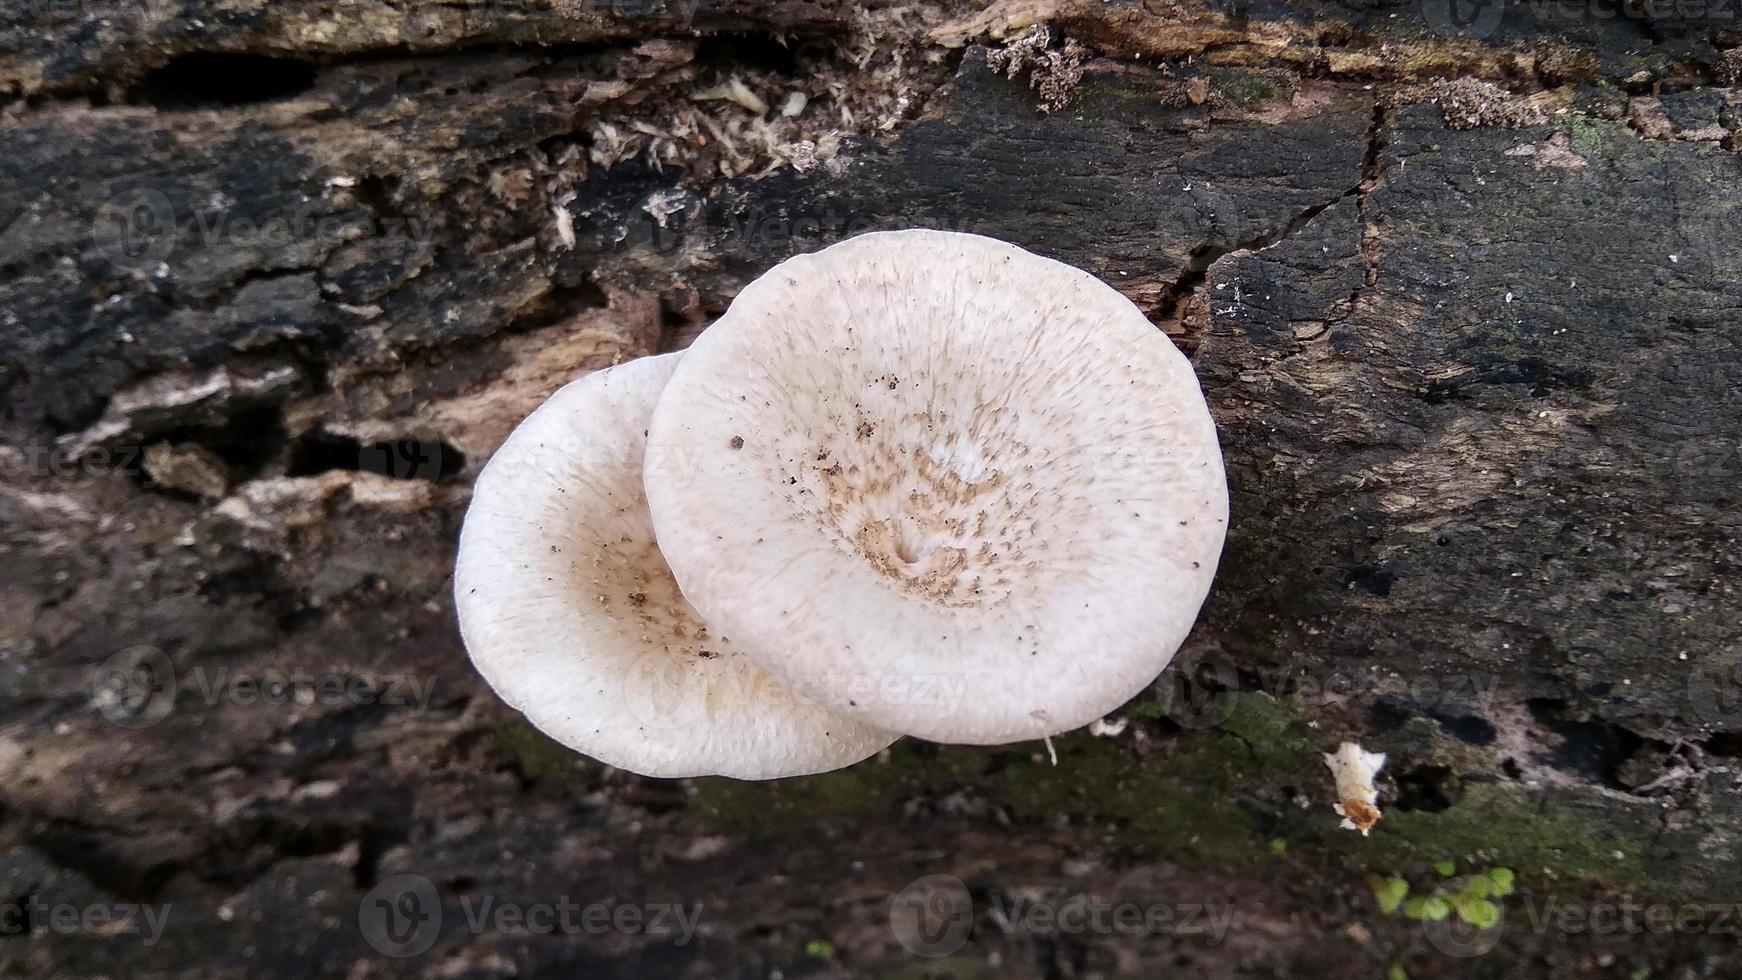 il bel fungo bianco selvatico di lentinus tigrinus cresce sul tronco marcio nella stagione delle piogge. adatto per scienza, agricoltura, riviste, pubblicità, poster, ecc. foto